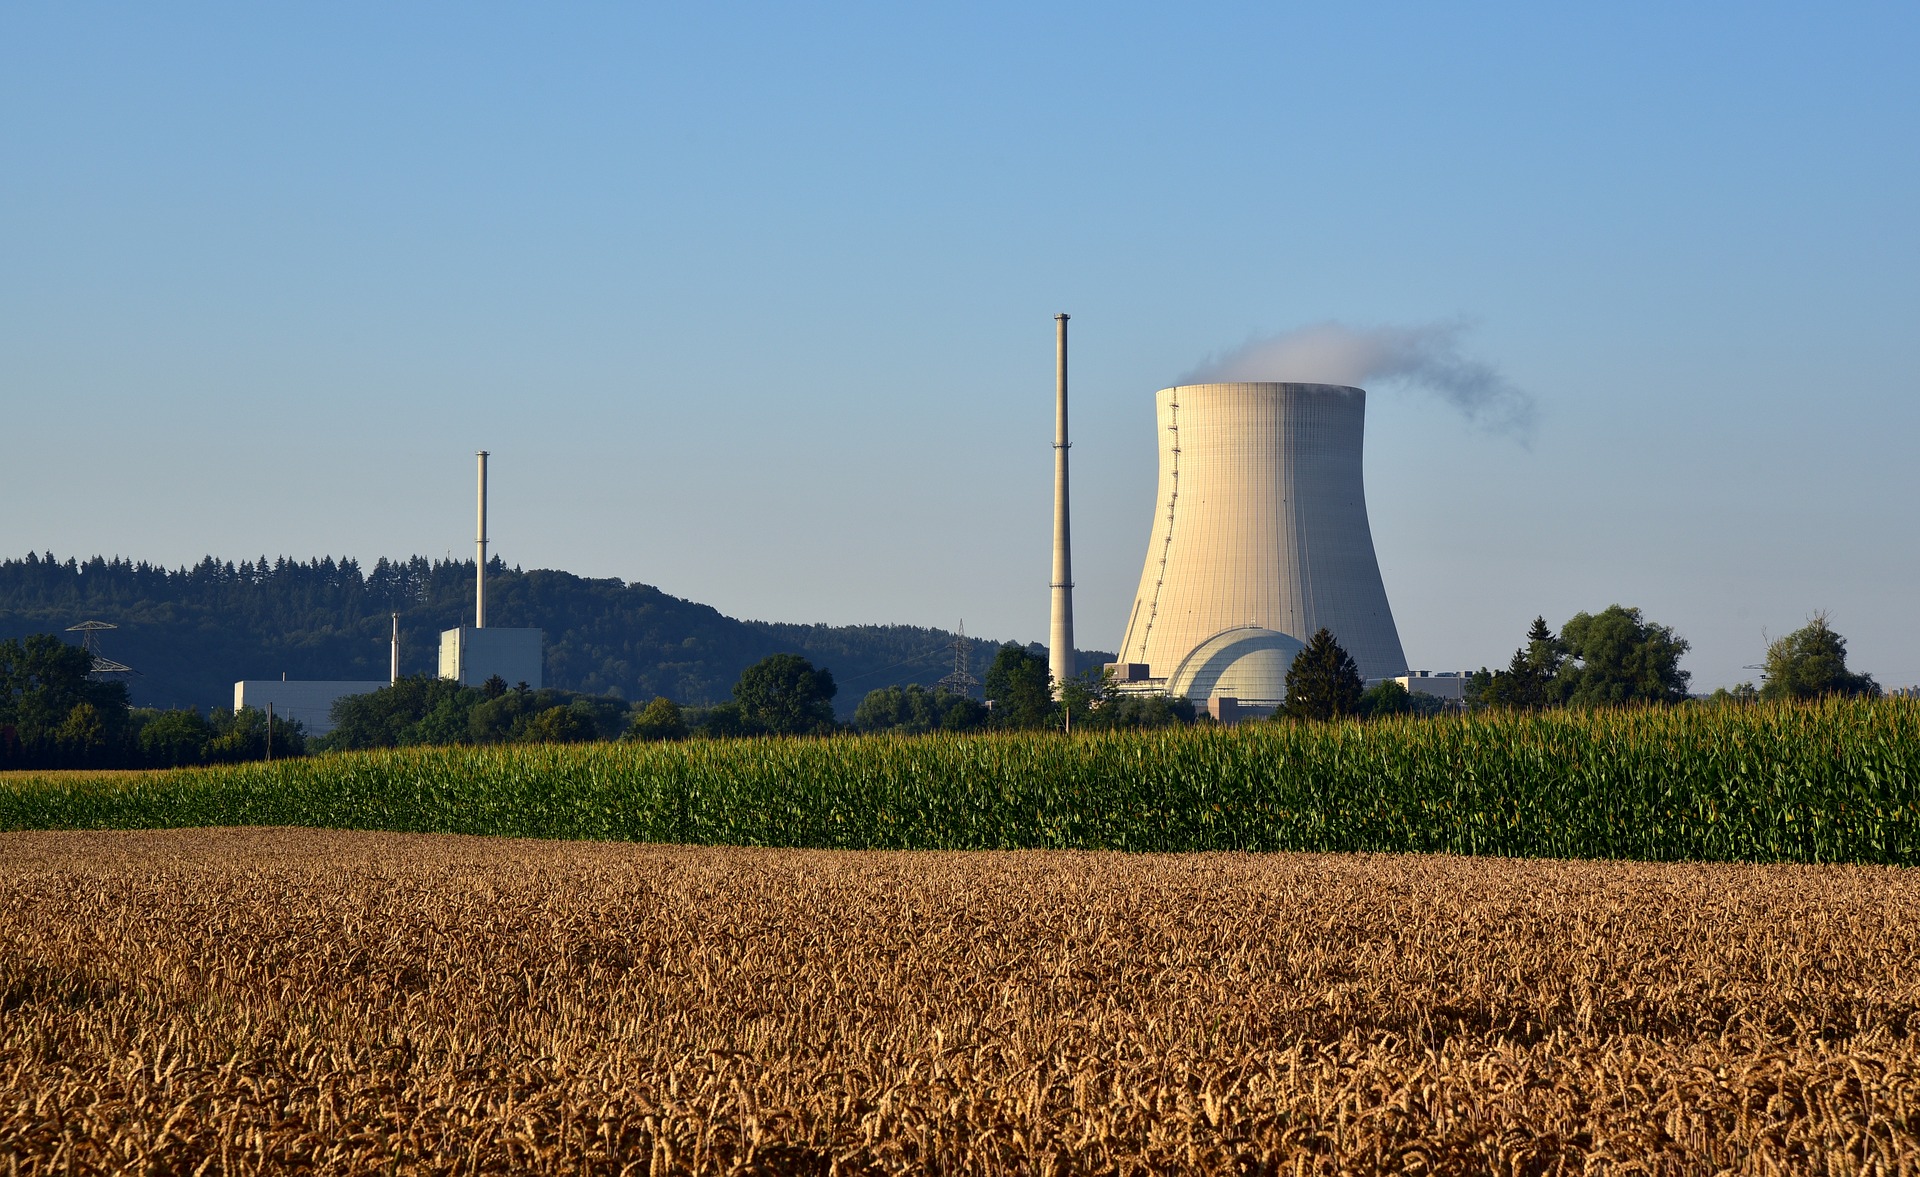 Saksa on Euroopassa poikkeus ja sulkee ydinvoimalansa vuoden 2022 loppuun mennessä. Kuva: Pixabay